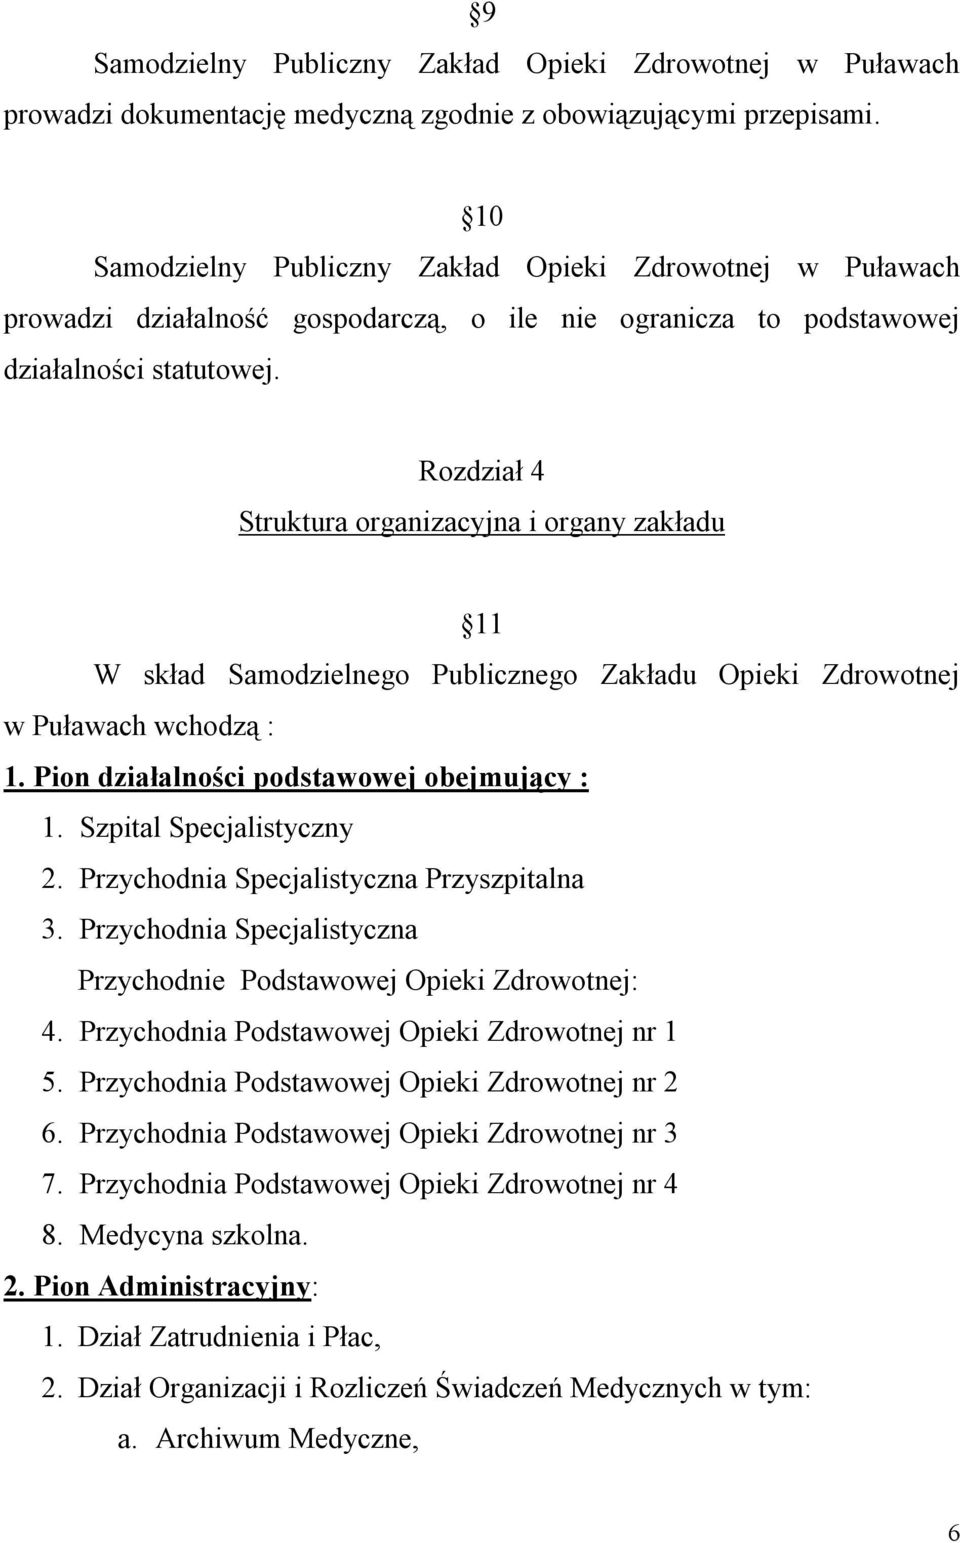 Rozdział 4 Struktura organizacyjna i organy zakładu 11 W skład Samodzielnego Publicznego Zakładu Opieki Zdrowotnej w Puławach wchodzą : 1. Pion działalności podstawowej obejmujący : 1.